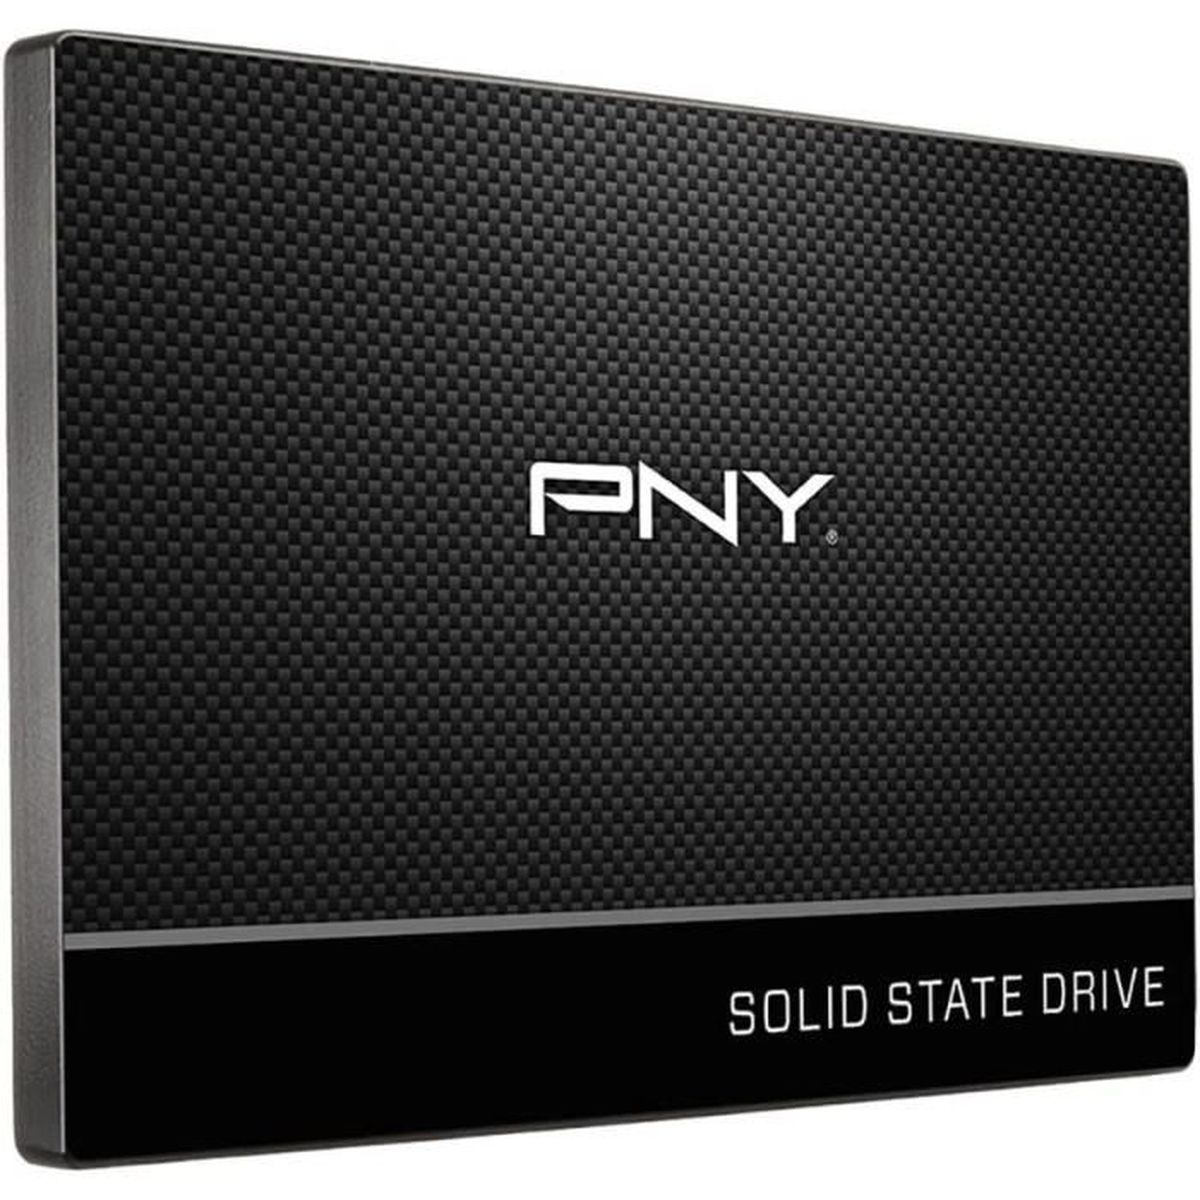 SSD7CS900-4TB-RB, 4 PNY TB, intern SSD,